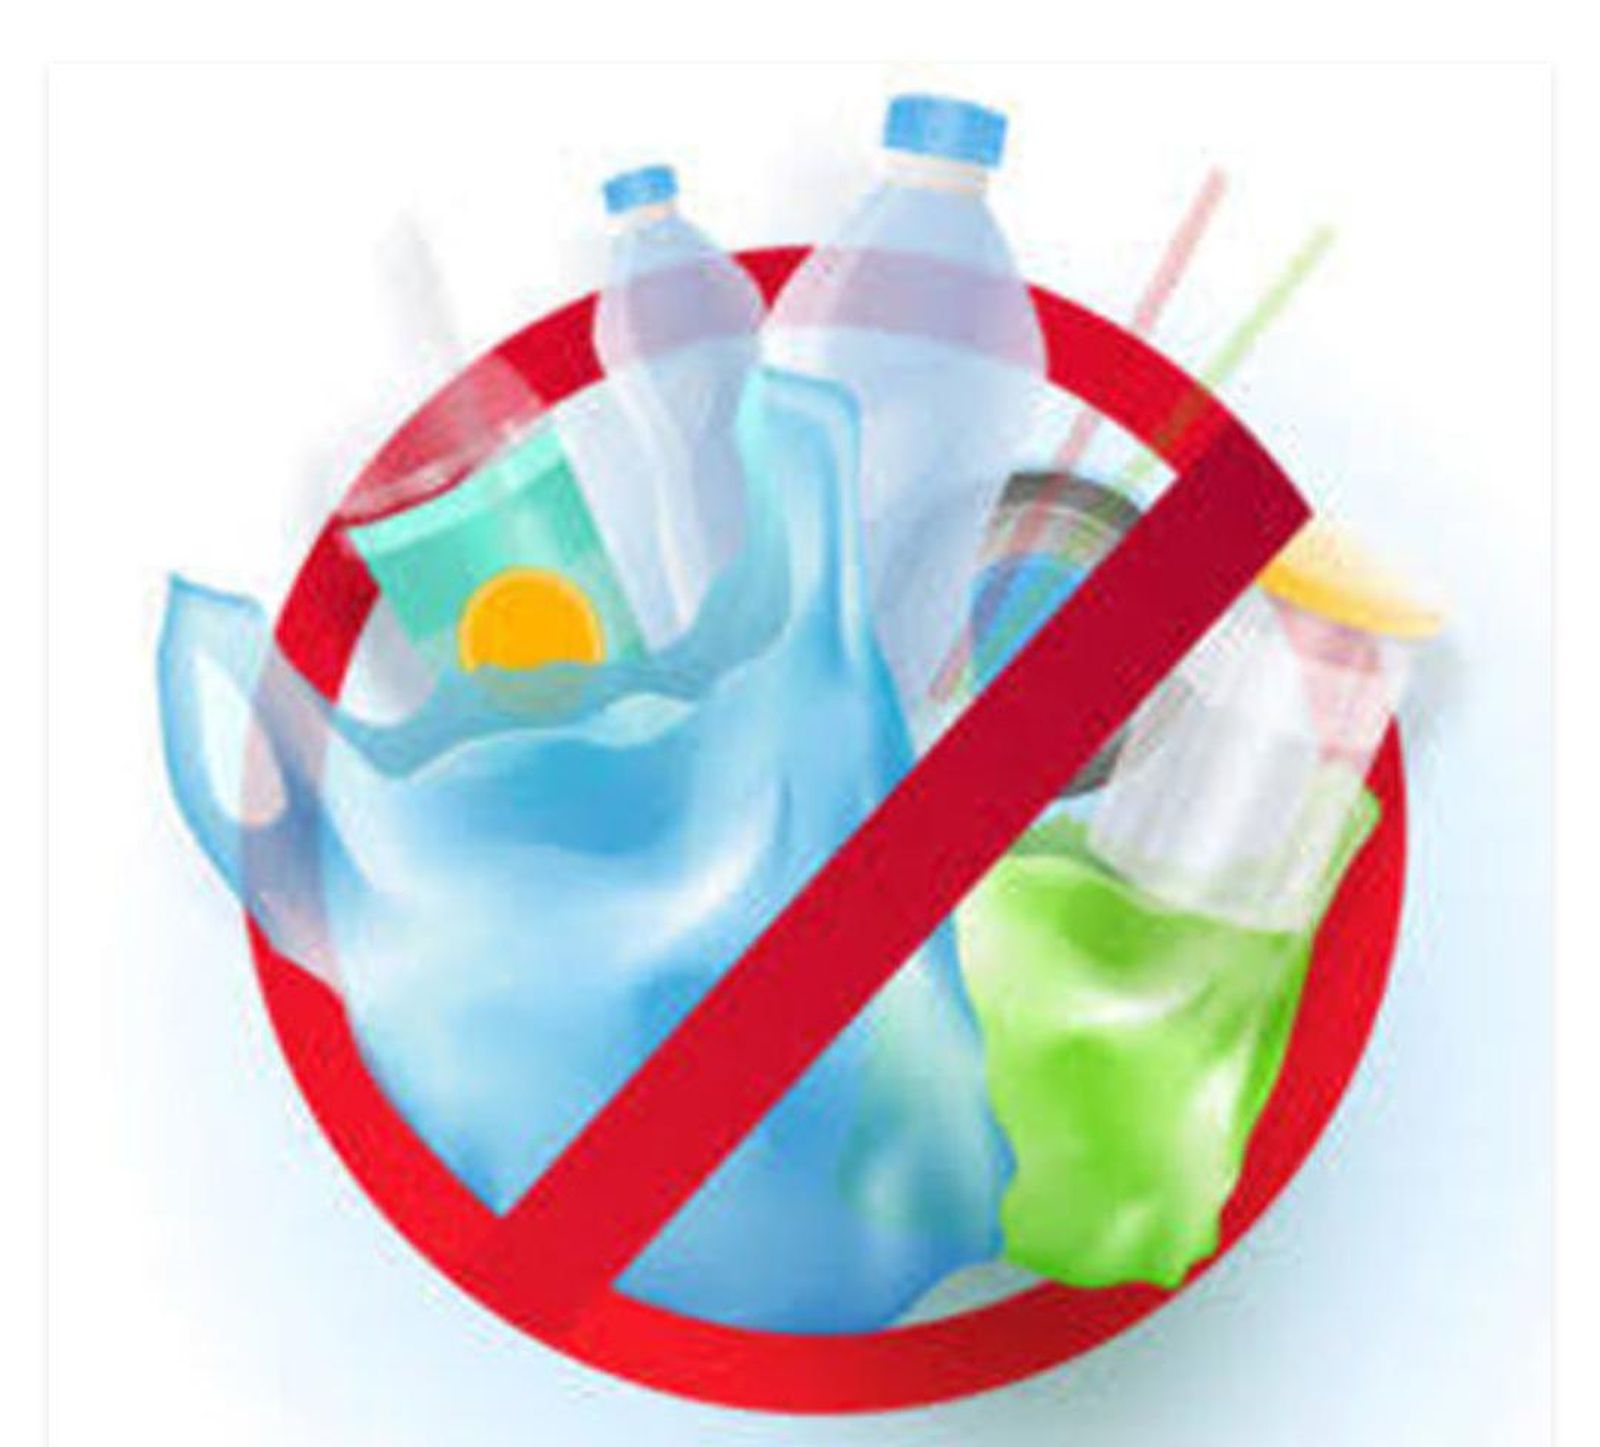 सिंगल यूज प्लास्टिक प्रतिबंध, प्रदूषण नियंत्रण बोर्ड ने तीन अफसरों का दल बनाया, करेंगे जांच